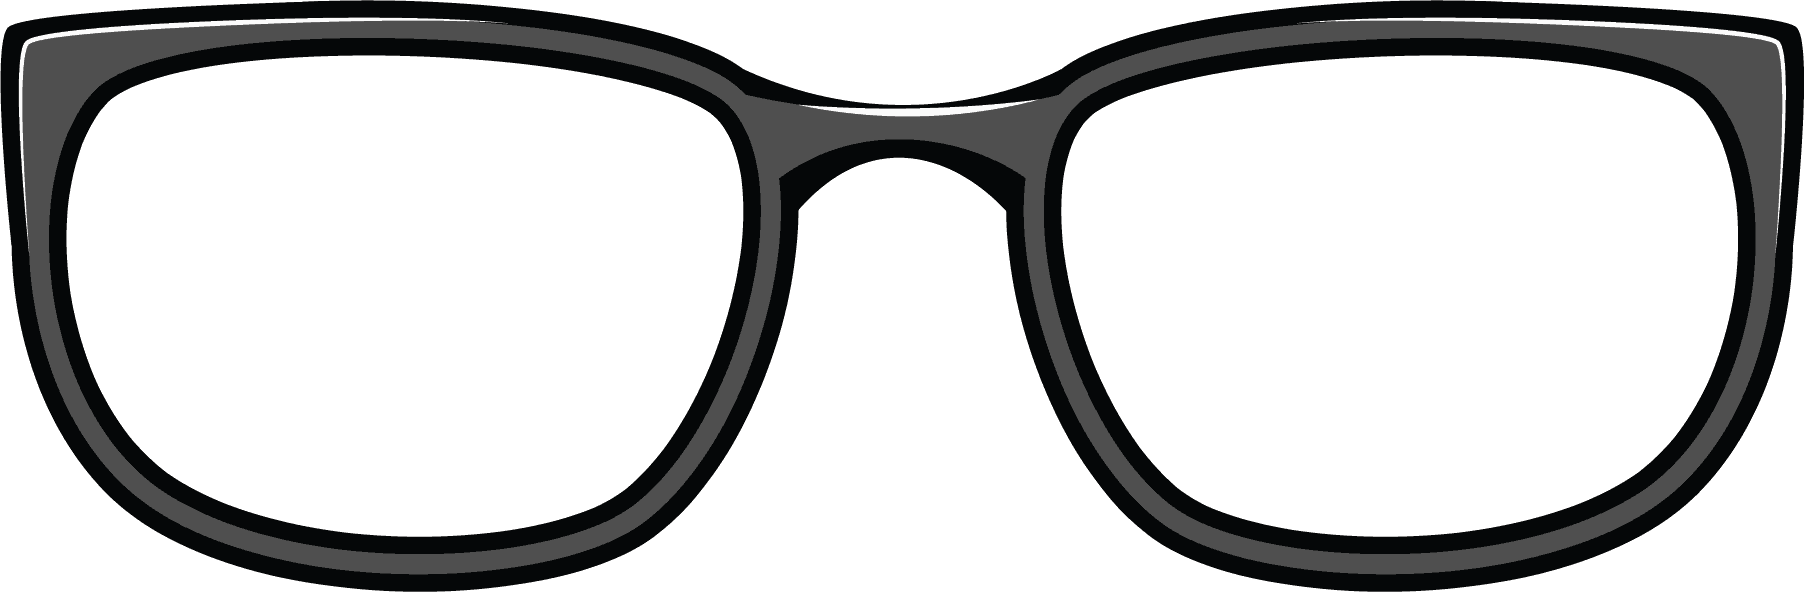 eye-glasses-clip-art-clip-art-library